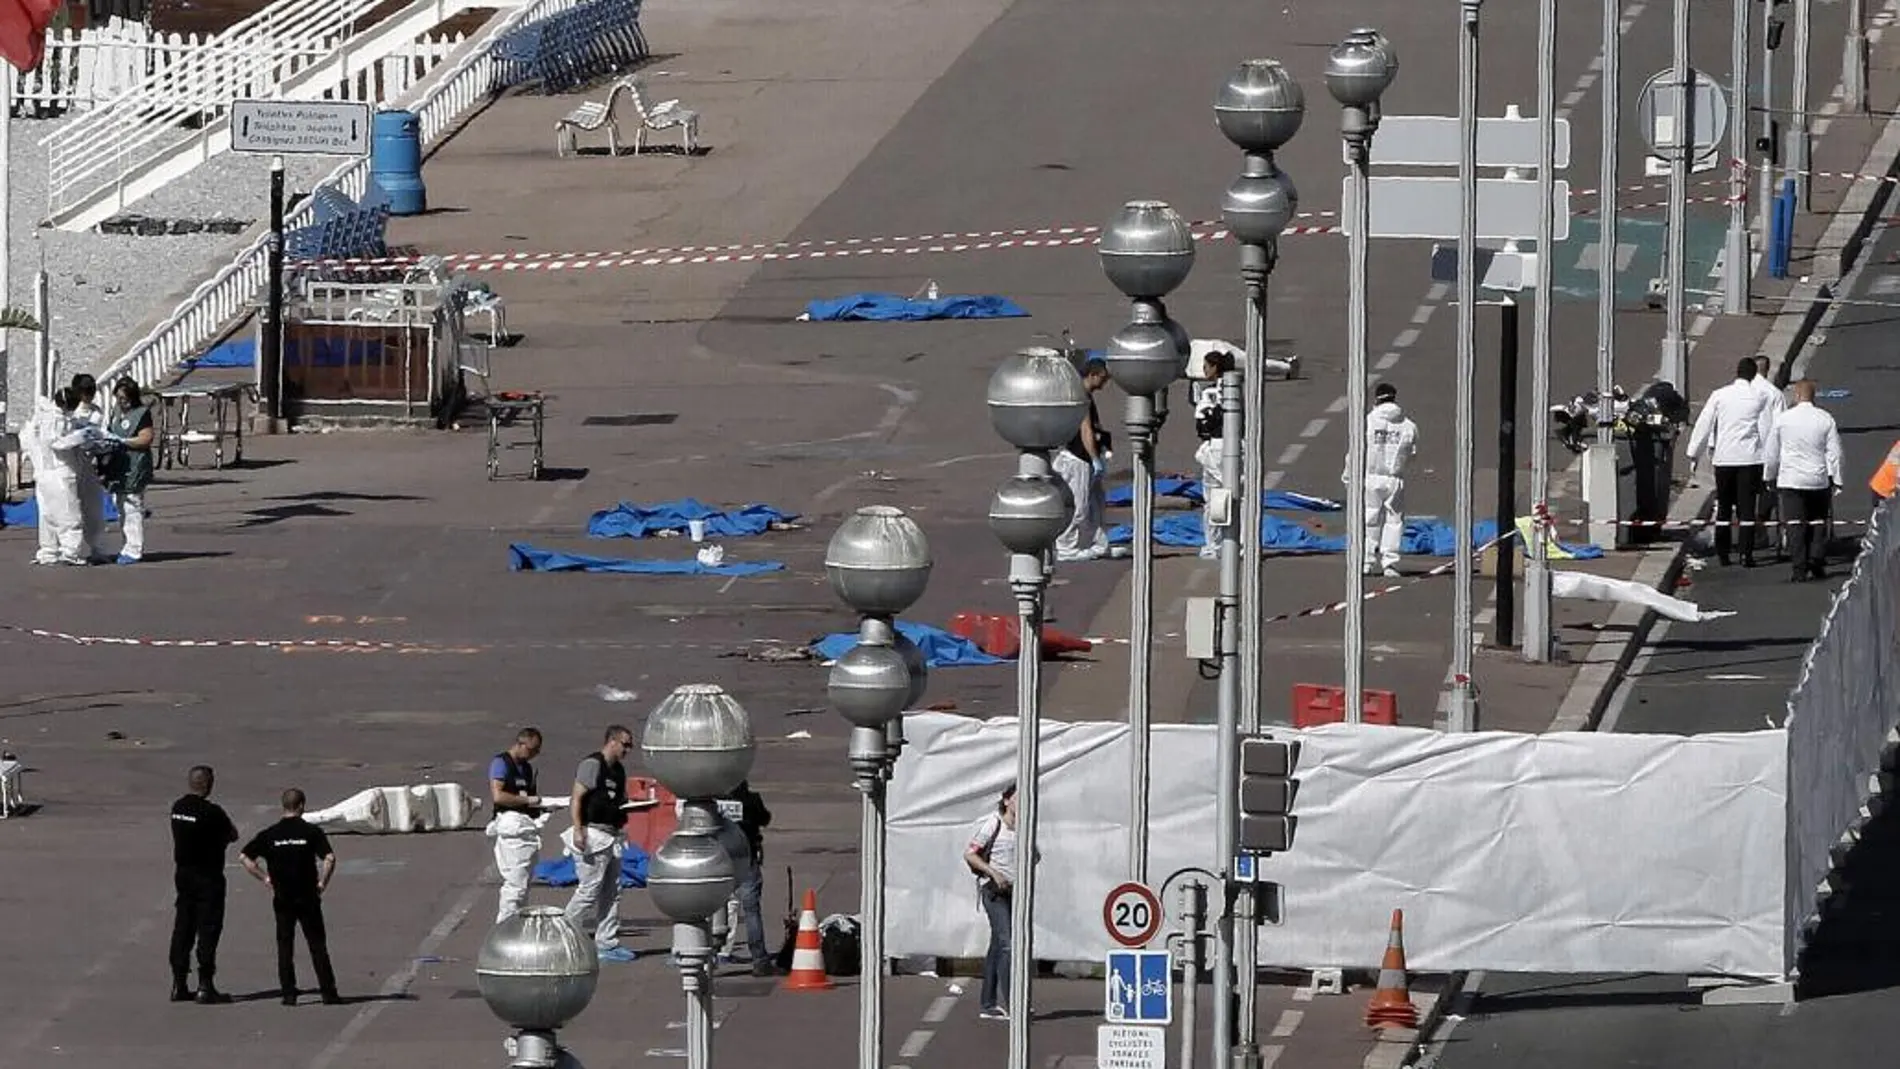 Investigadores de la policía en el Paseo de los Ingleses, al día siguiente del atentado